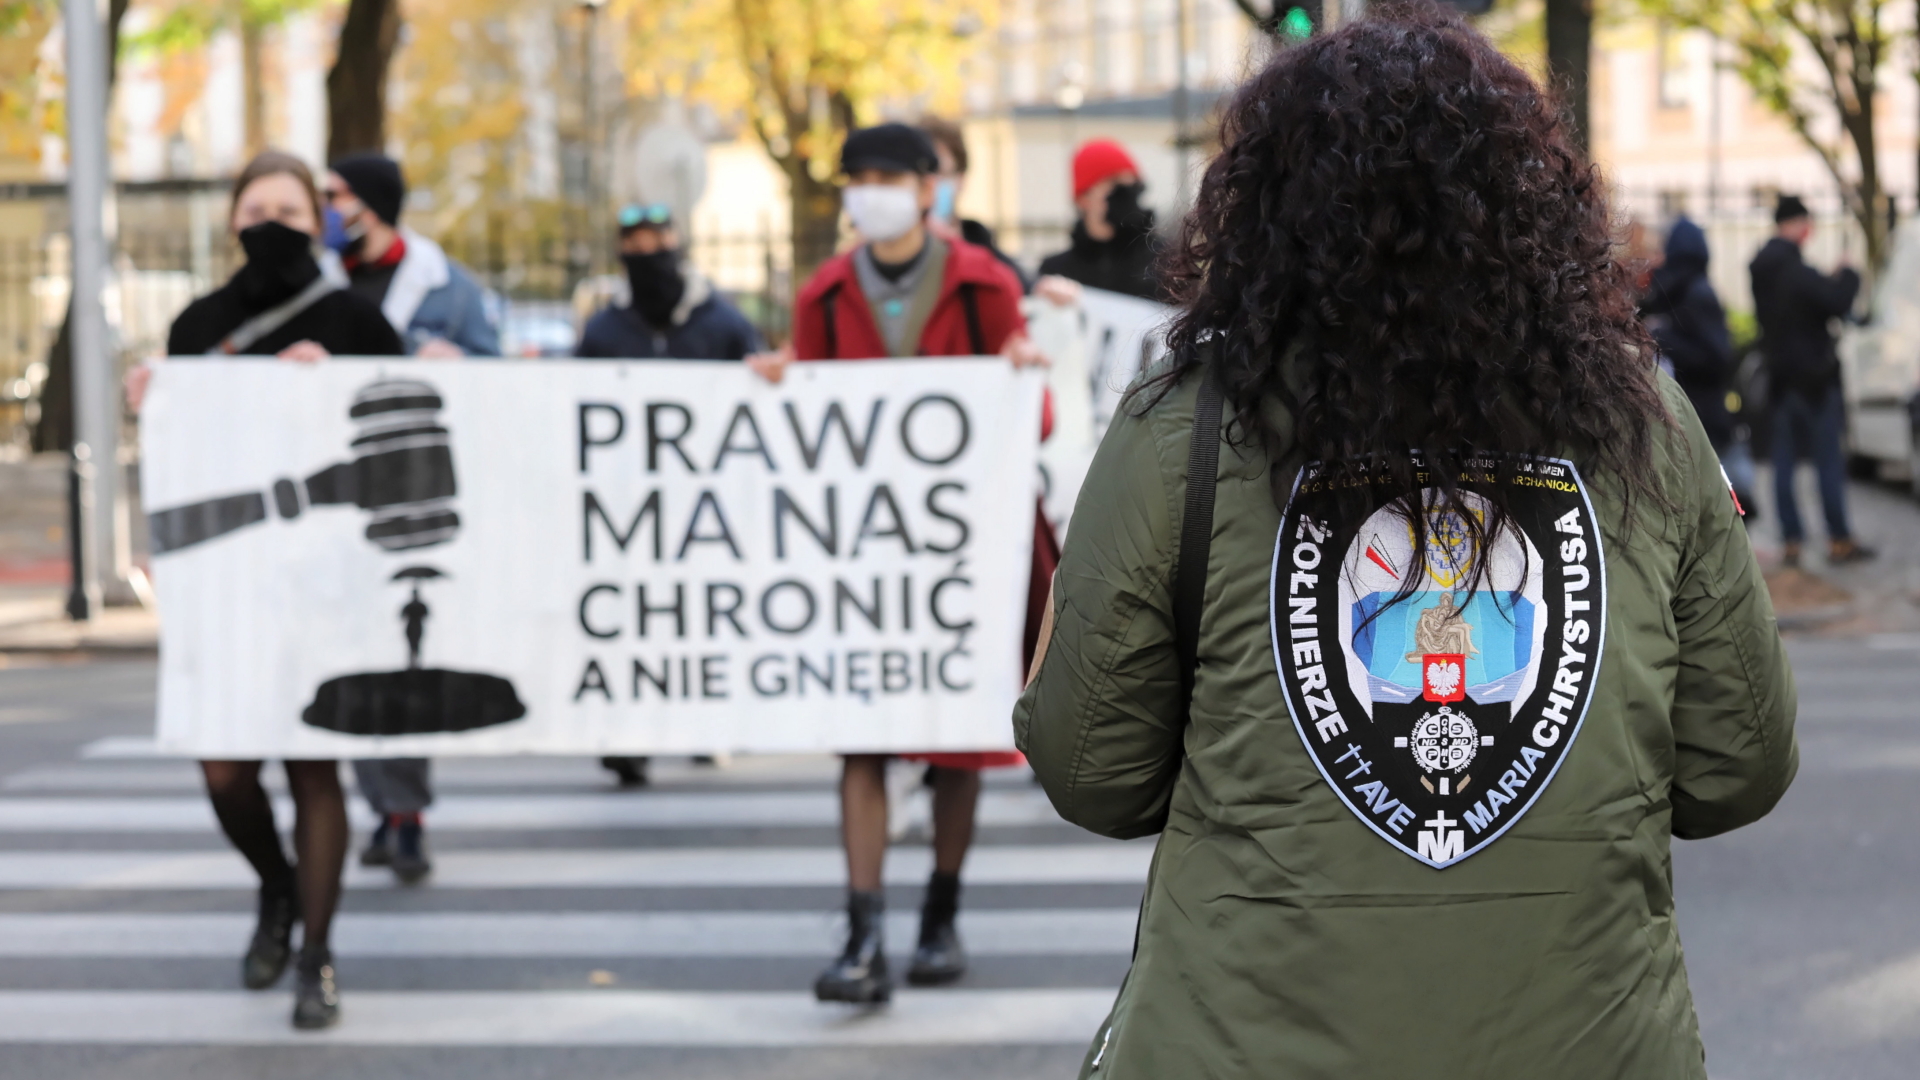 Frauenrechtsaktivistinnen und Abtreibungsgegnerinnen demonstieren vor dem Verfassungsgerichtshof in Warschau. | TOMASZ GZELL/EPA-EFE/Shutterstoc